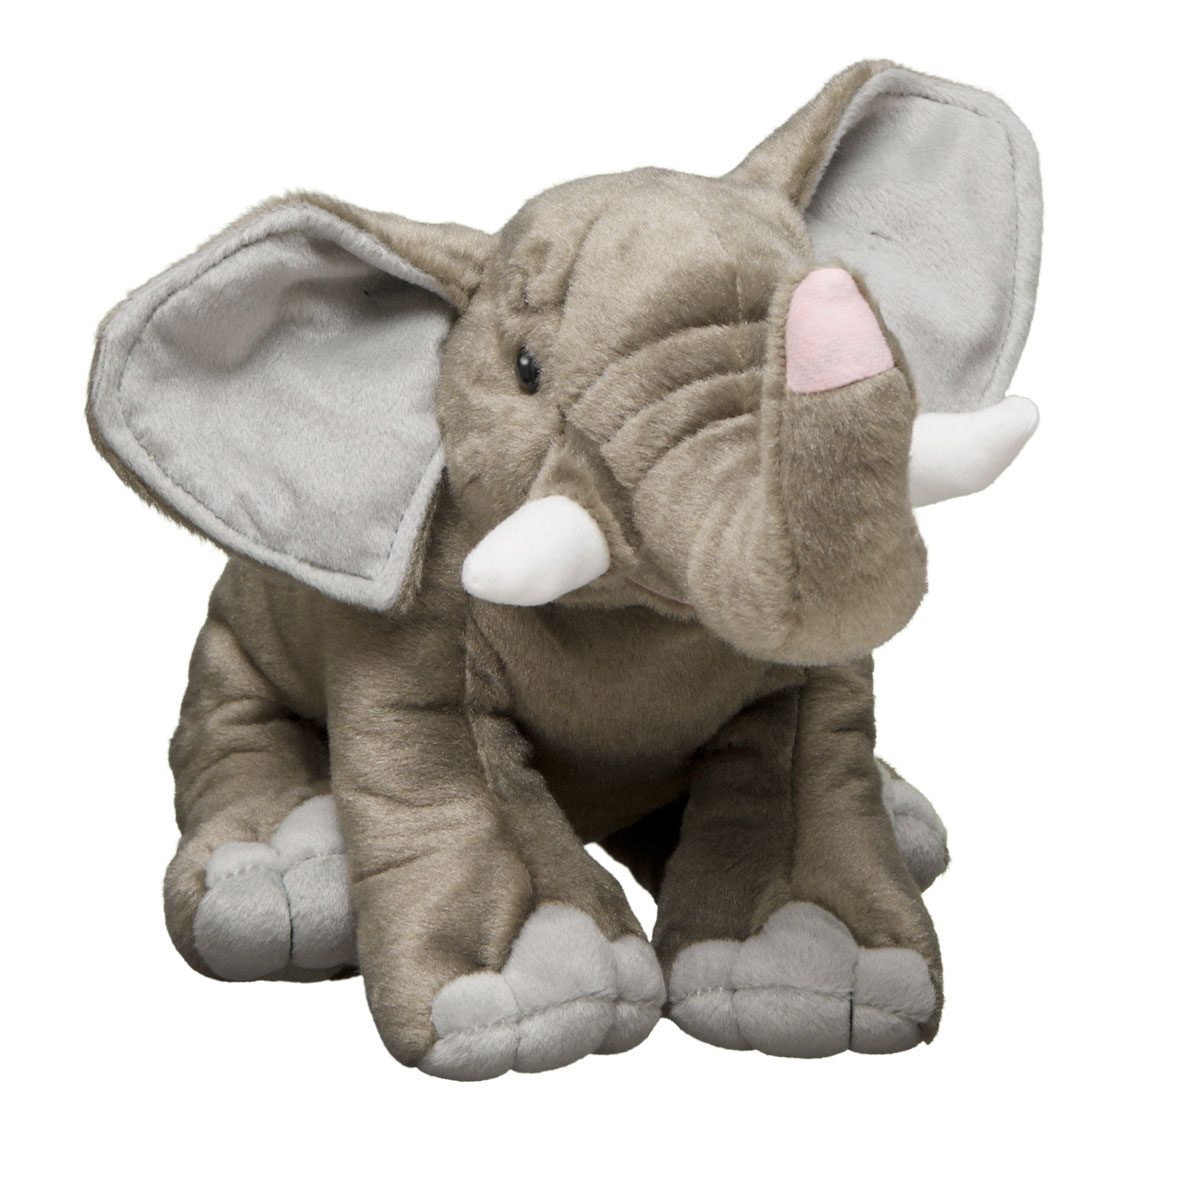 elephant stuffed animal